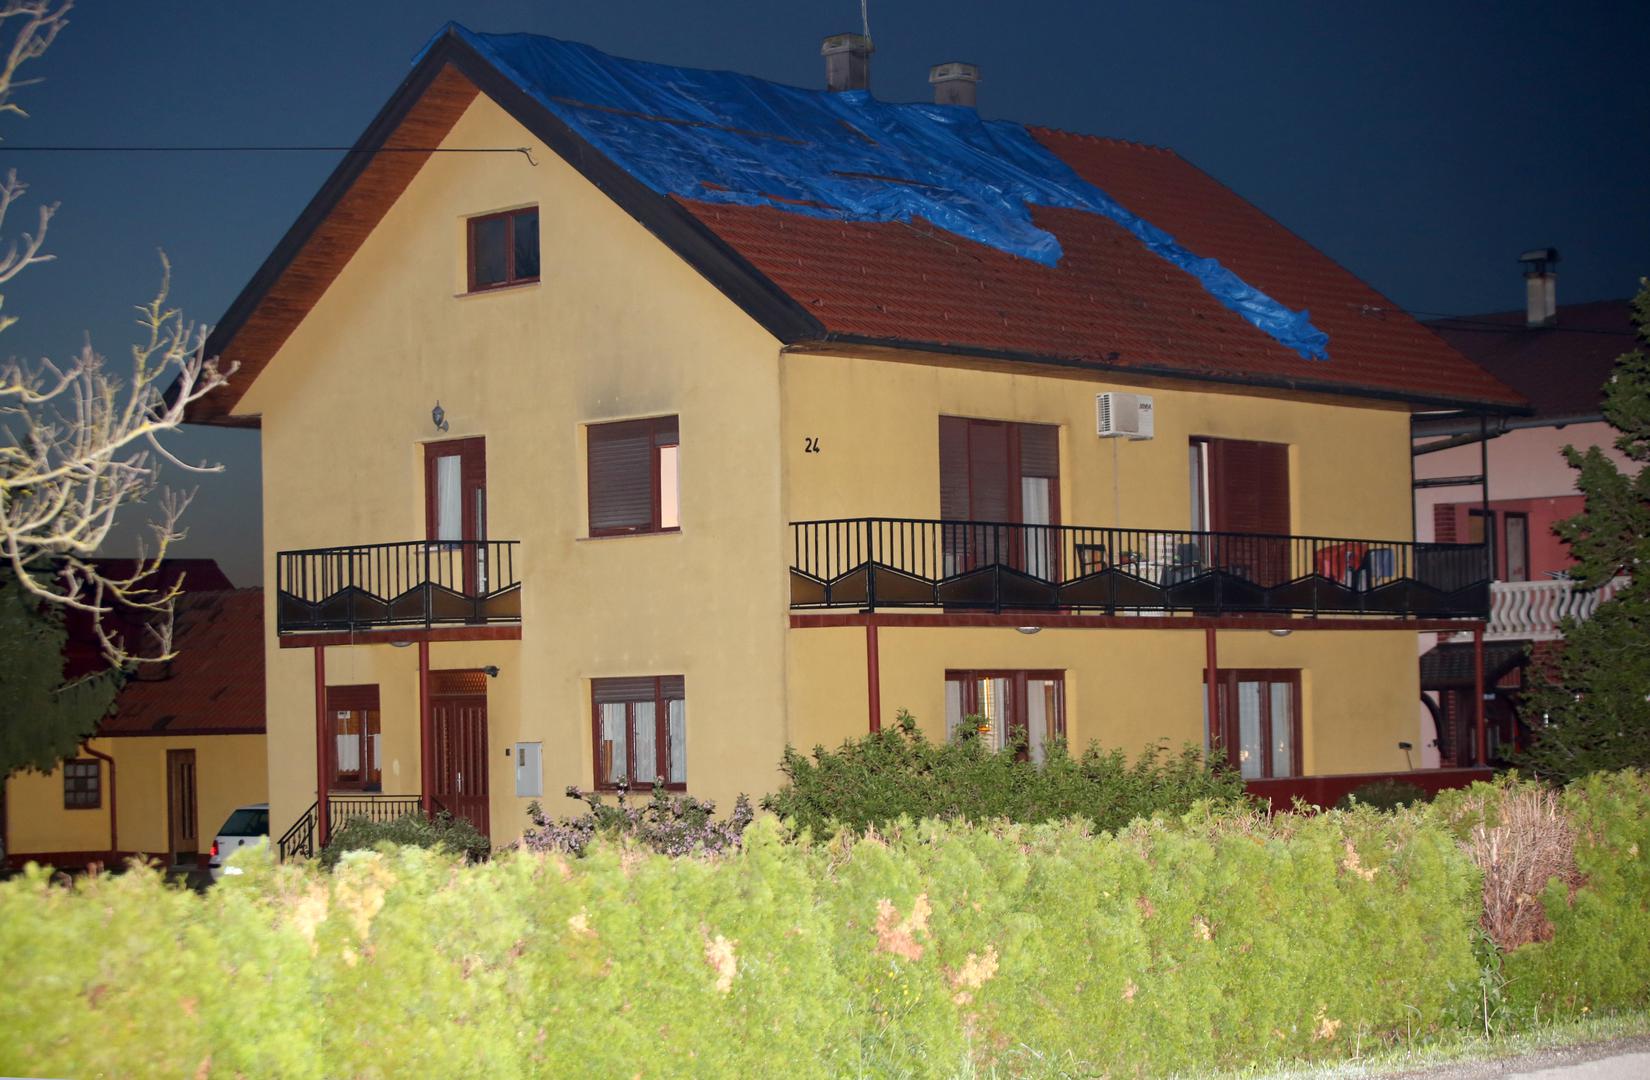 Krov obiteljske kuće obitelji Rožnaković u Drenačkom putu 24 oštećen je nakon udara groma.